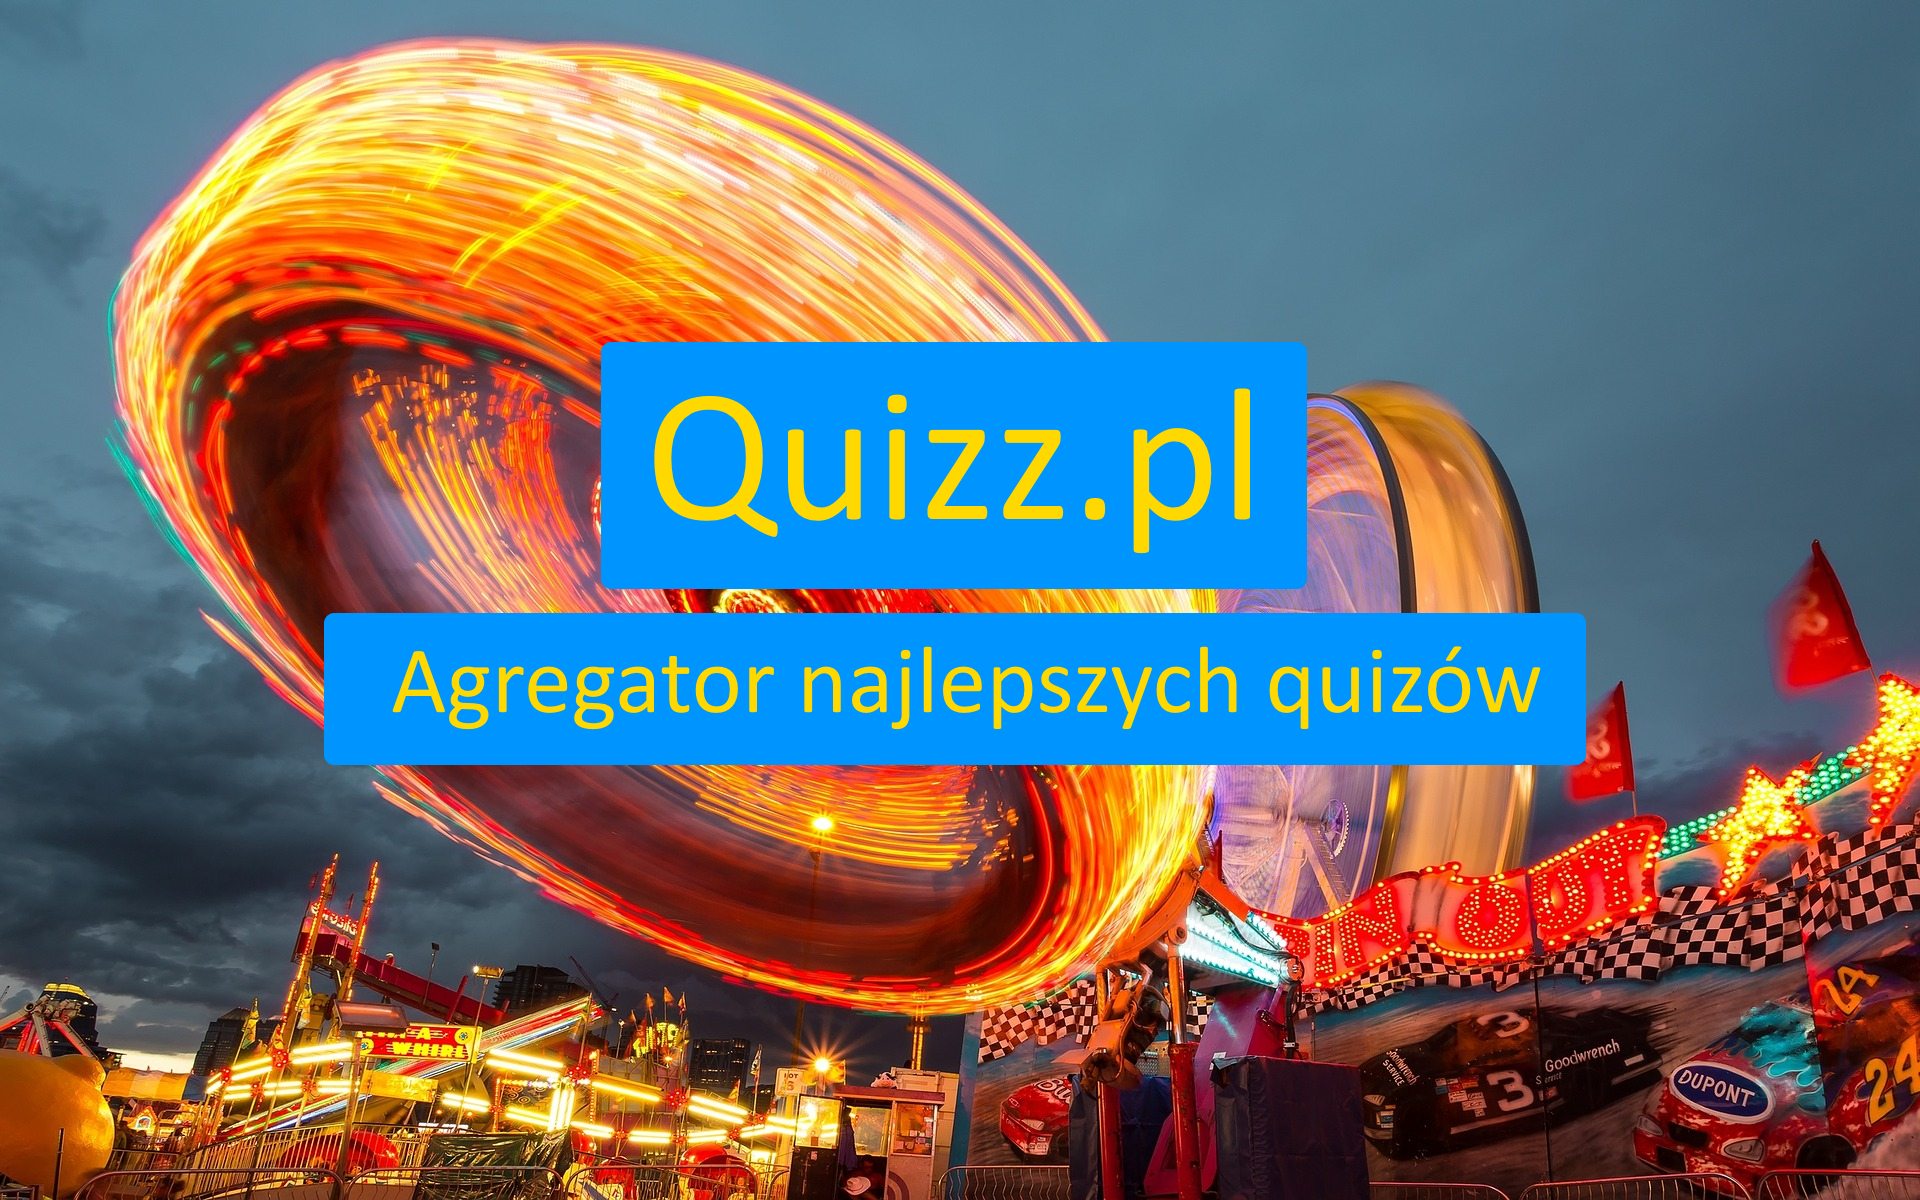 Motoryzacja - bezpłatne quizy, testy wiedzy i ankiety - www.quizz.pl